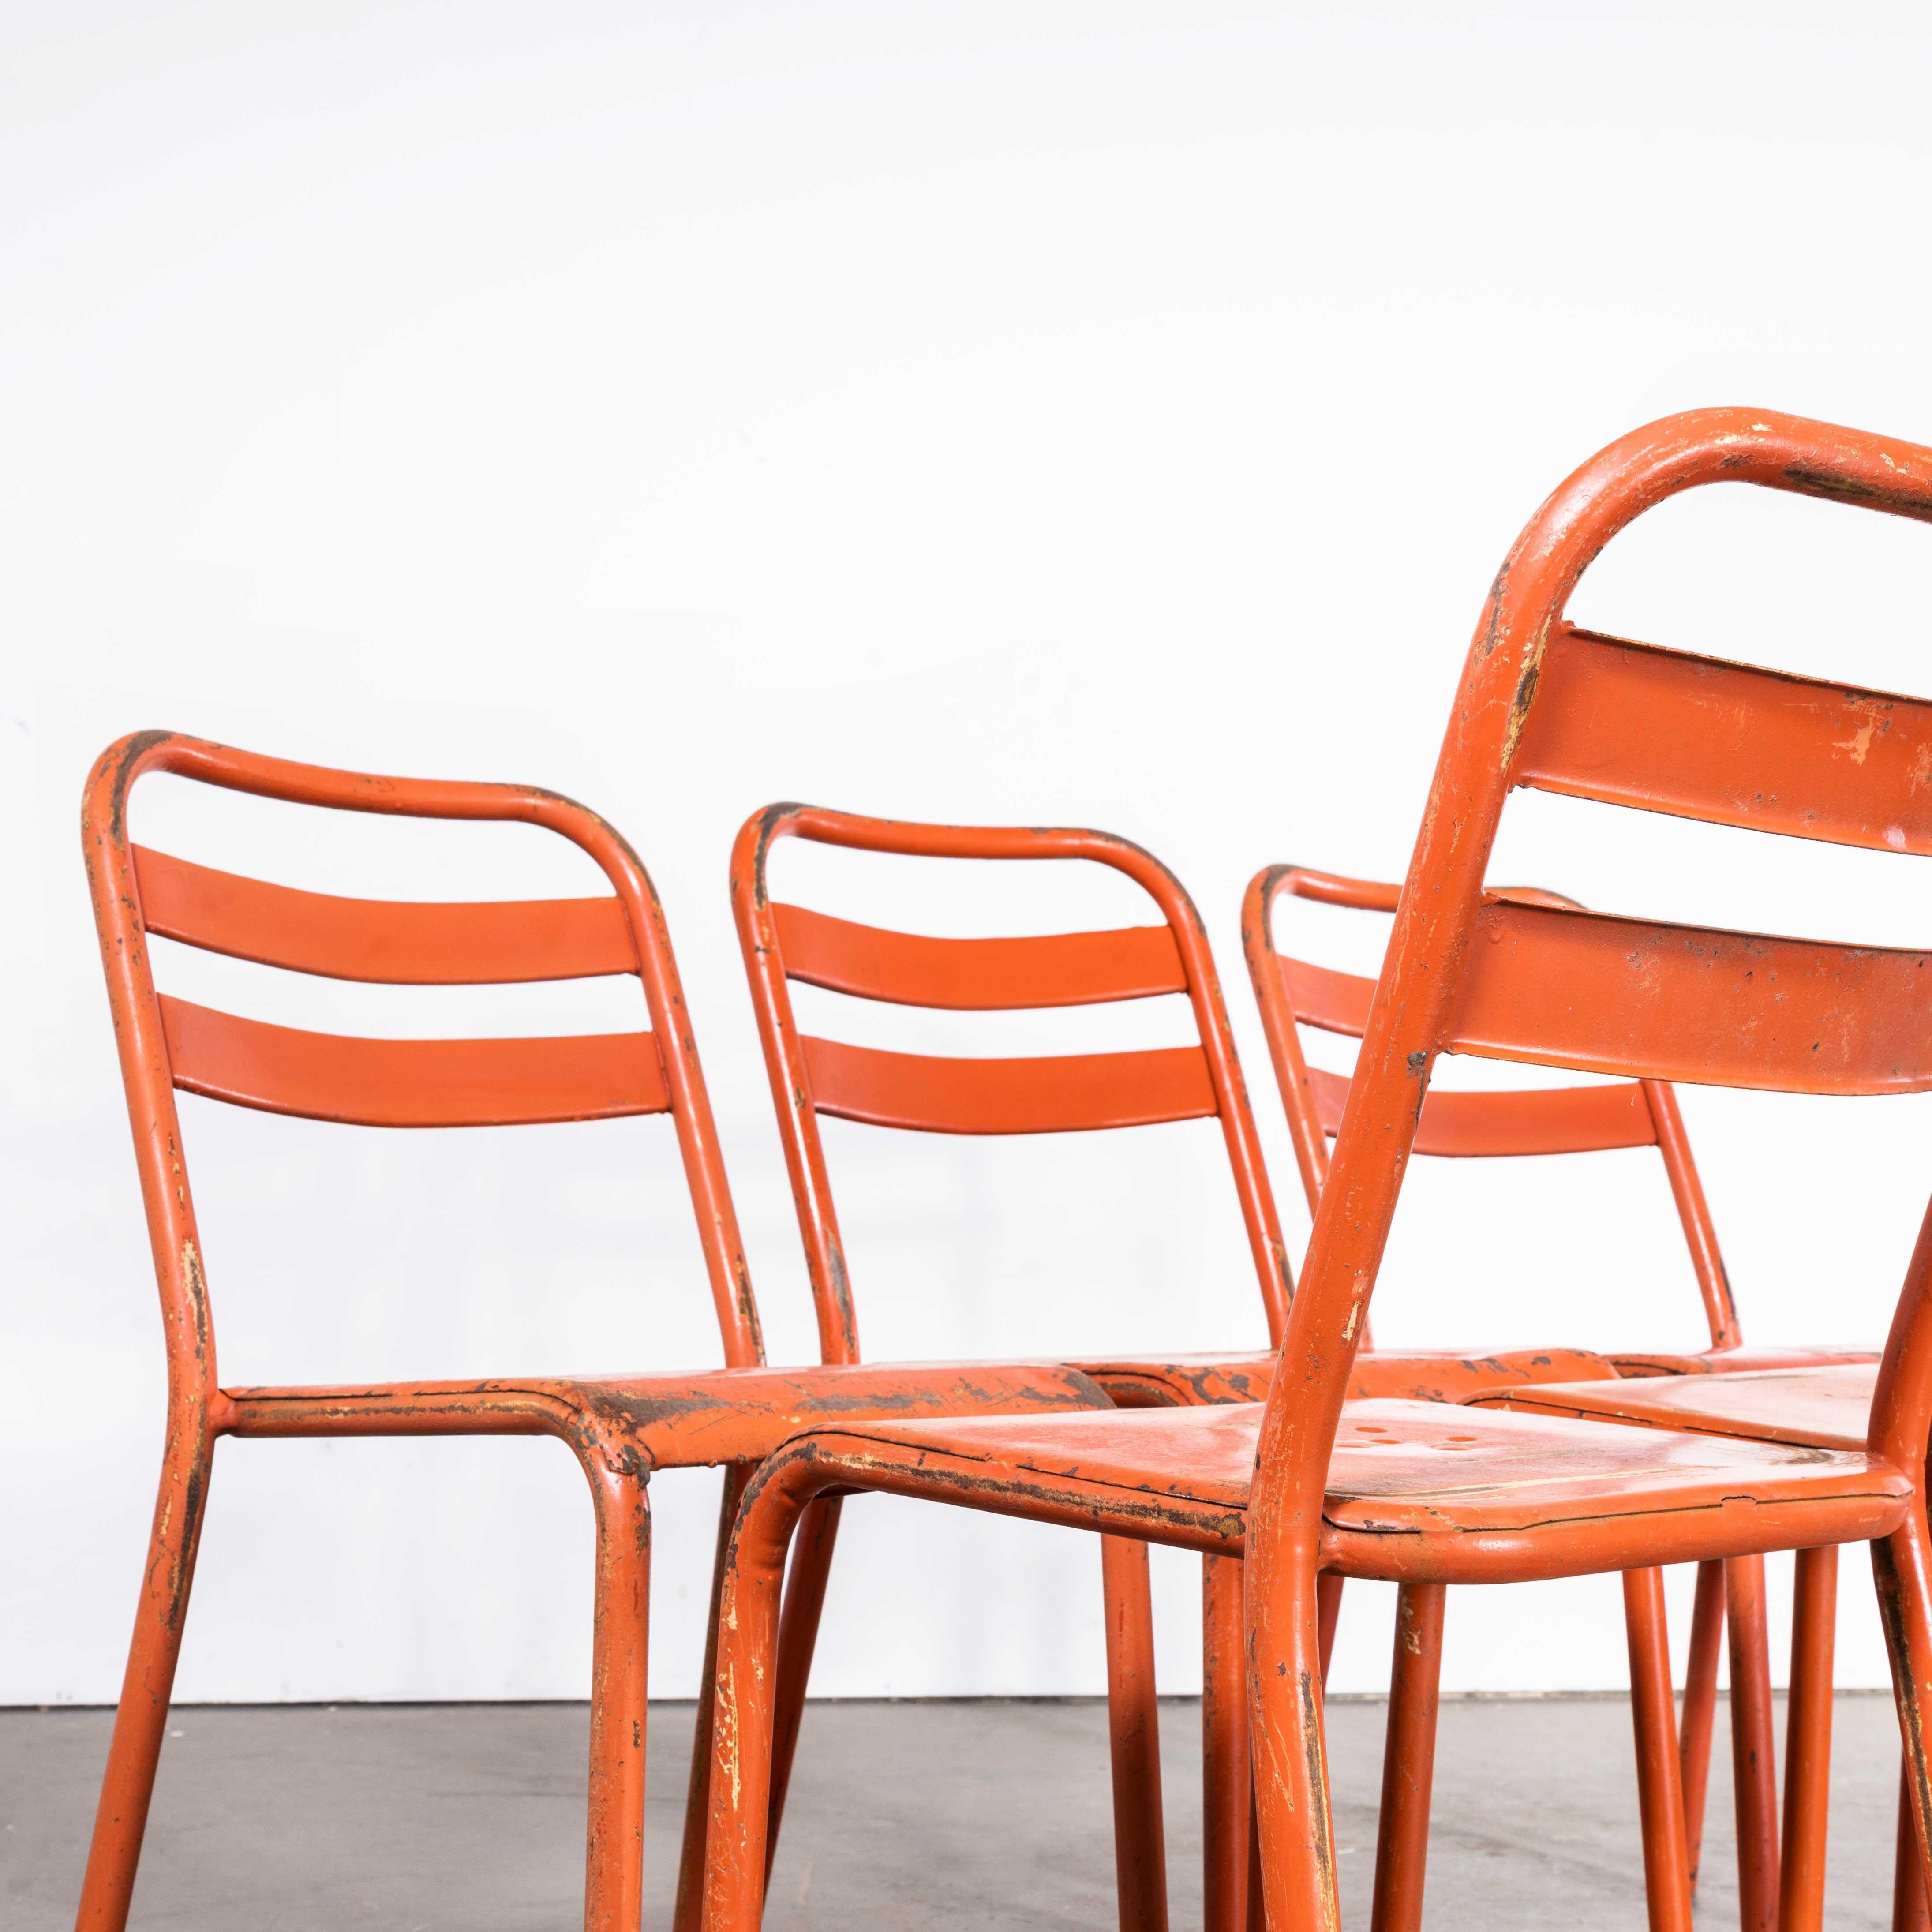 1960's Original Rote Französische Tolix T2 Metall Stühle für den Außenbereich - Set von sechs
1960's Original Rot Französisch Tolix T2 Metall Outdoor-Esszimmer Stühle - Set von sechs. Tolix ist eines unserer absoluten Lieblingsunternehmen. 1907